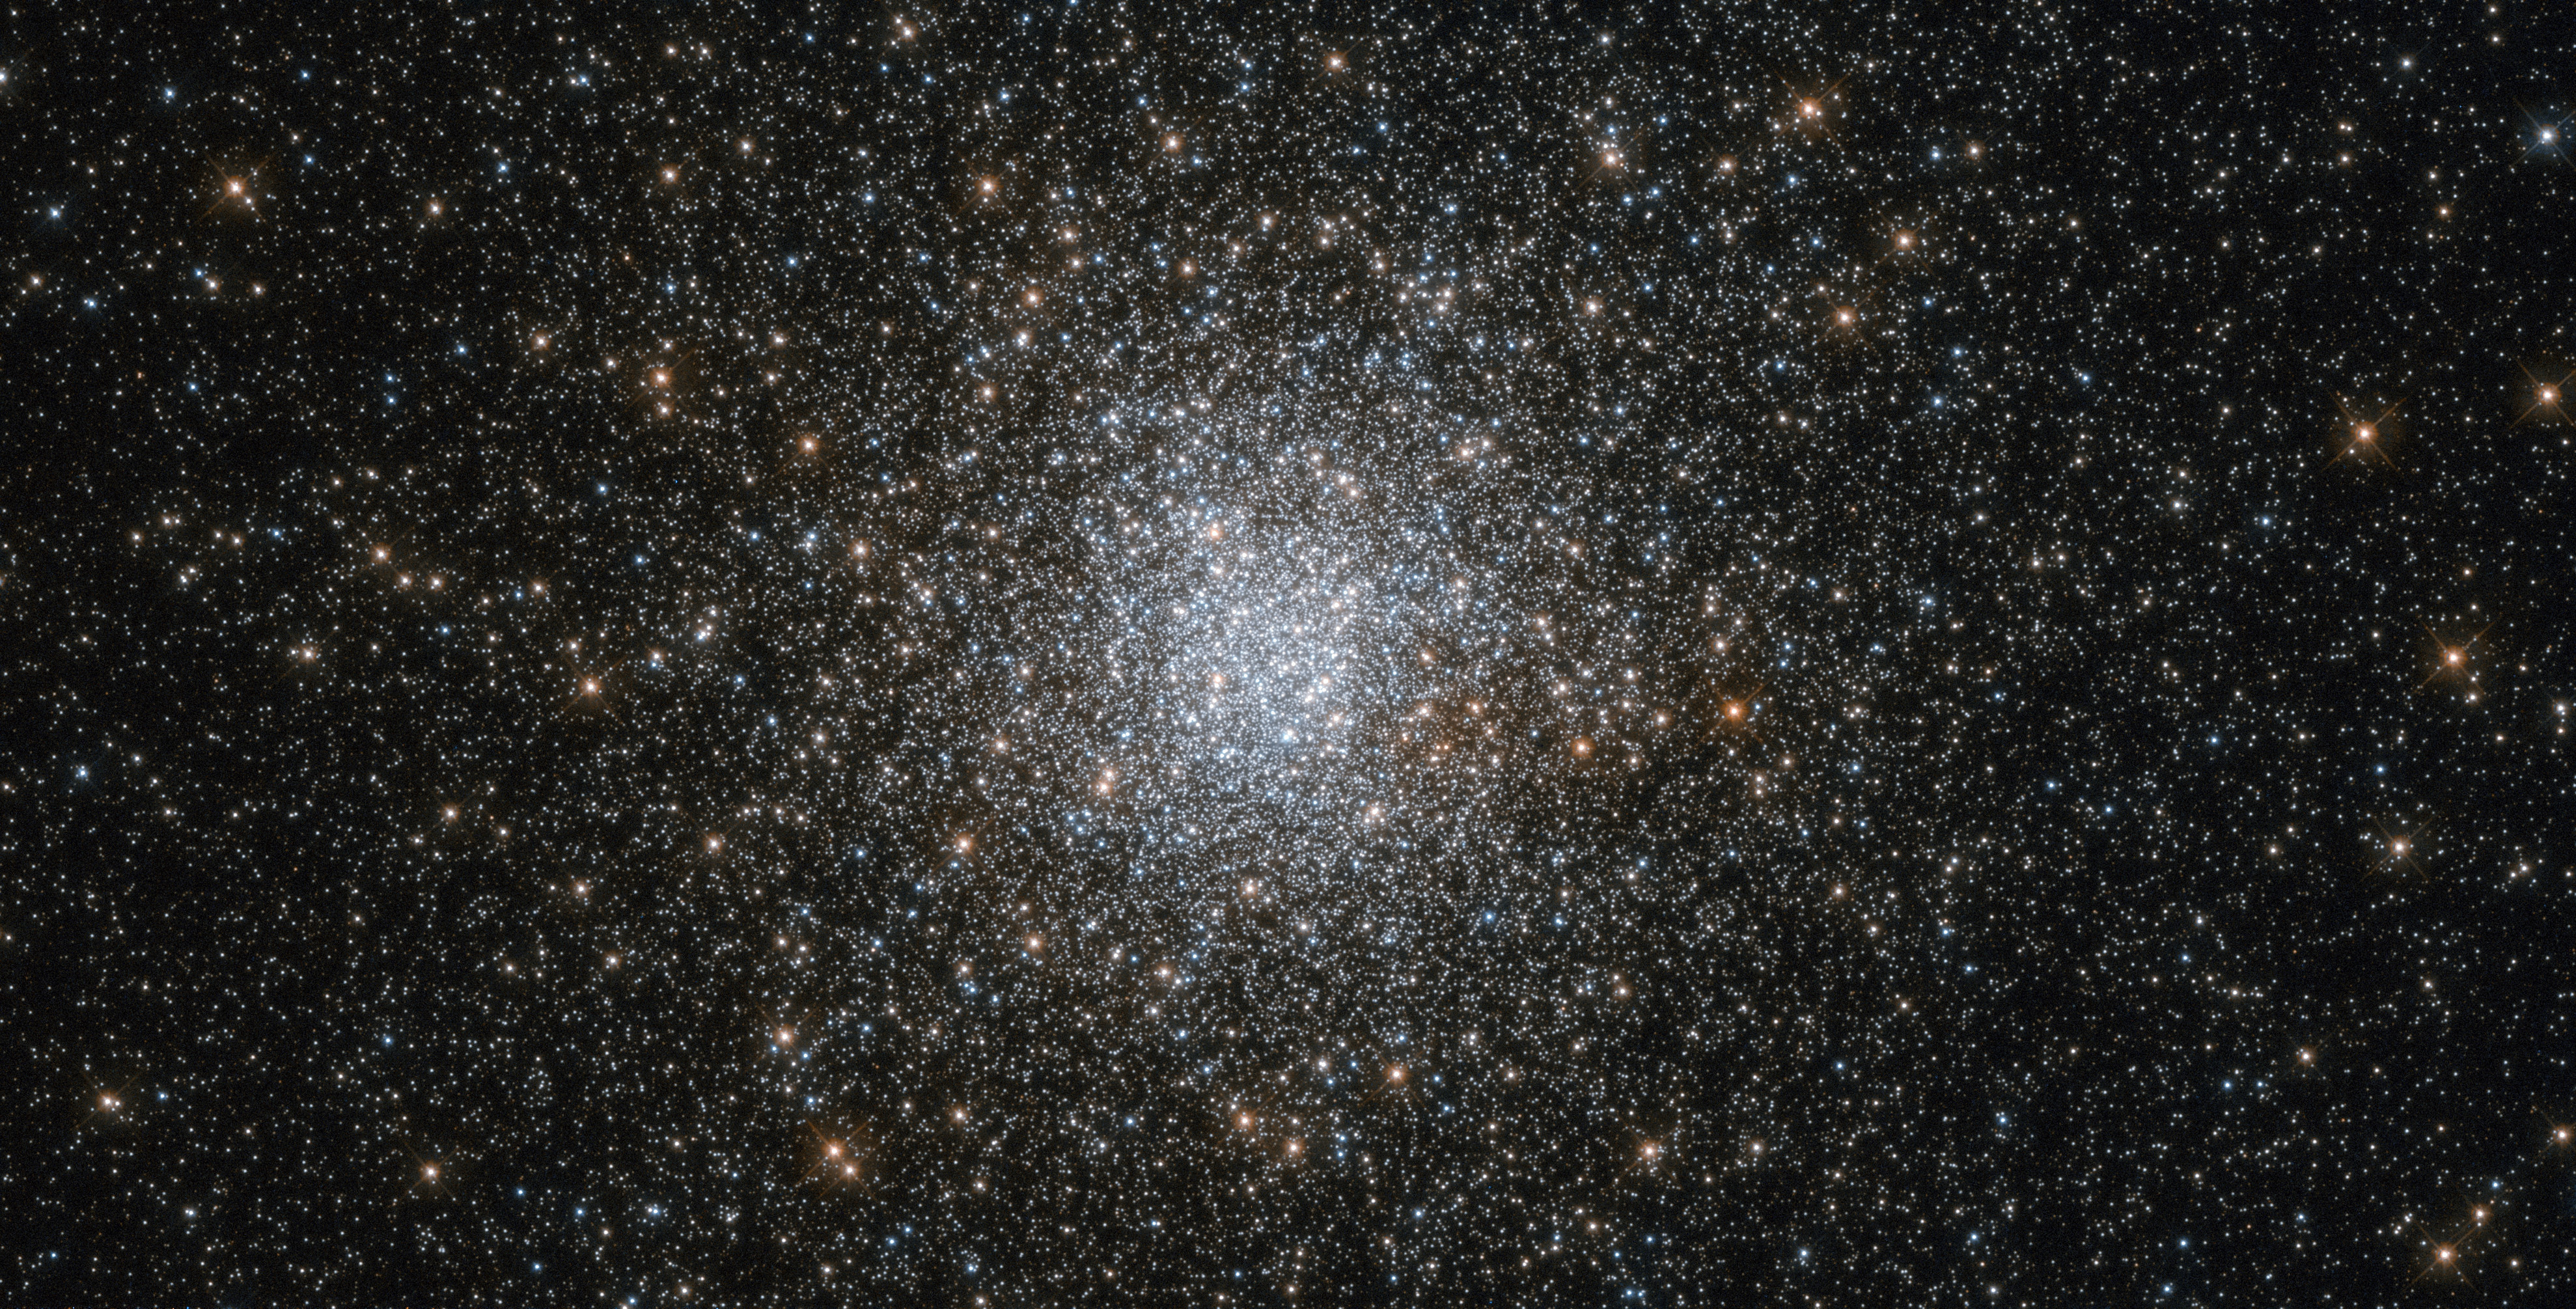 Hubble'ın görüntülediği bu fotoğraftaki yıldızlar tam 10 milyar yıl yaşında